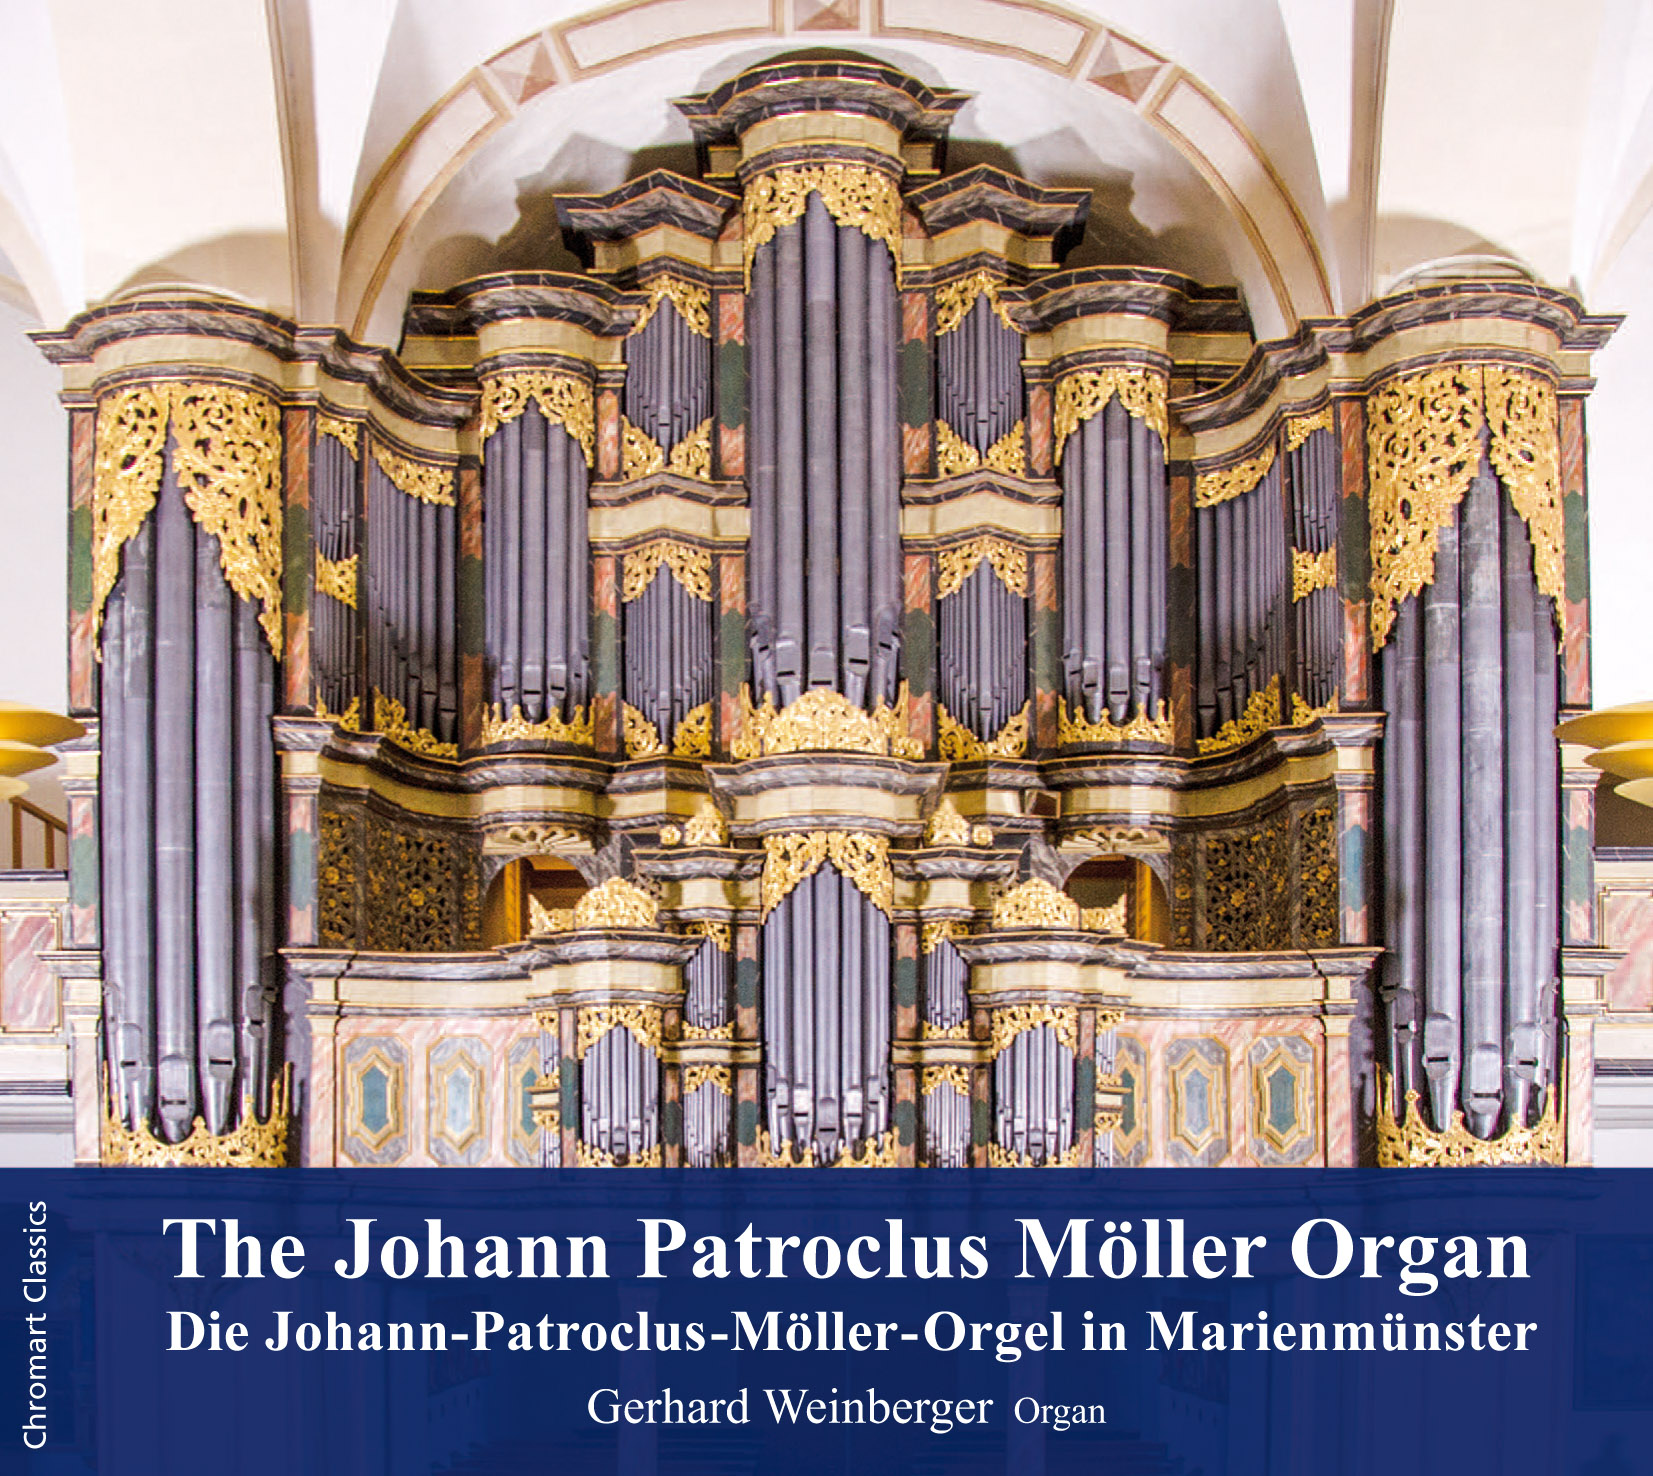 Die J.-P.-Möller-Orgel in Marienmünster